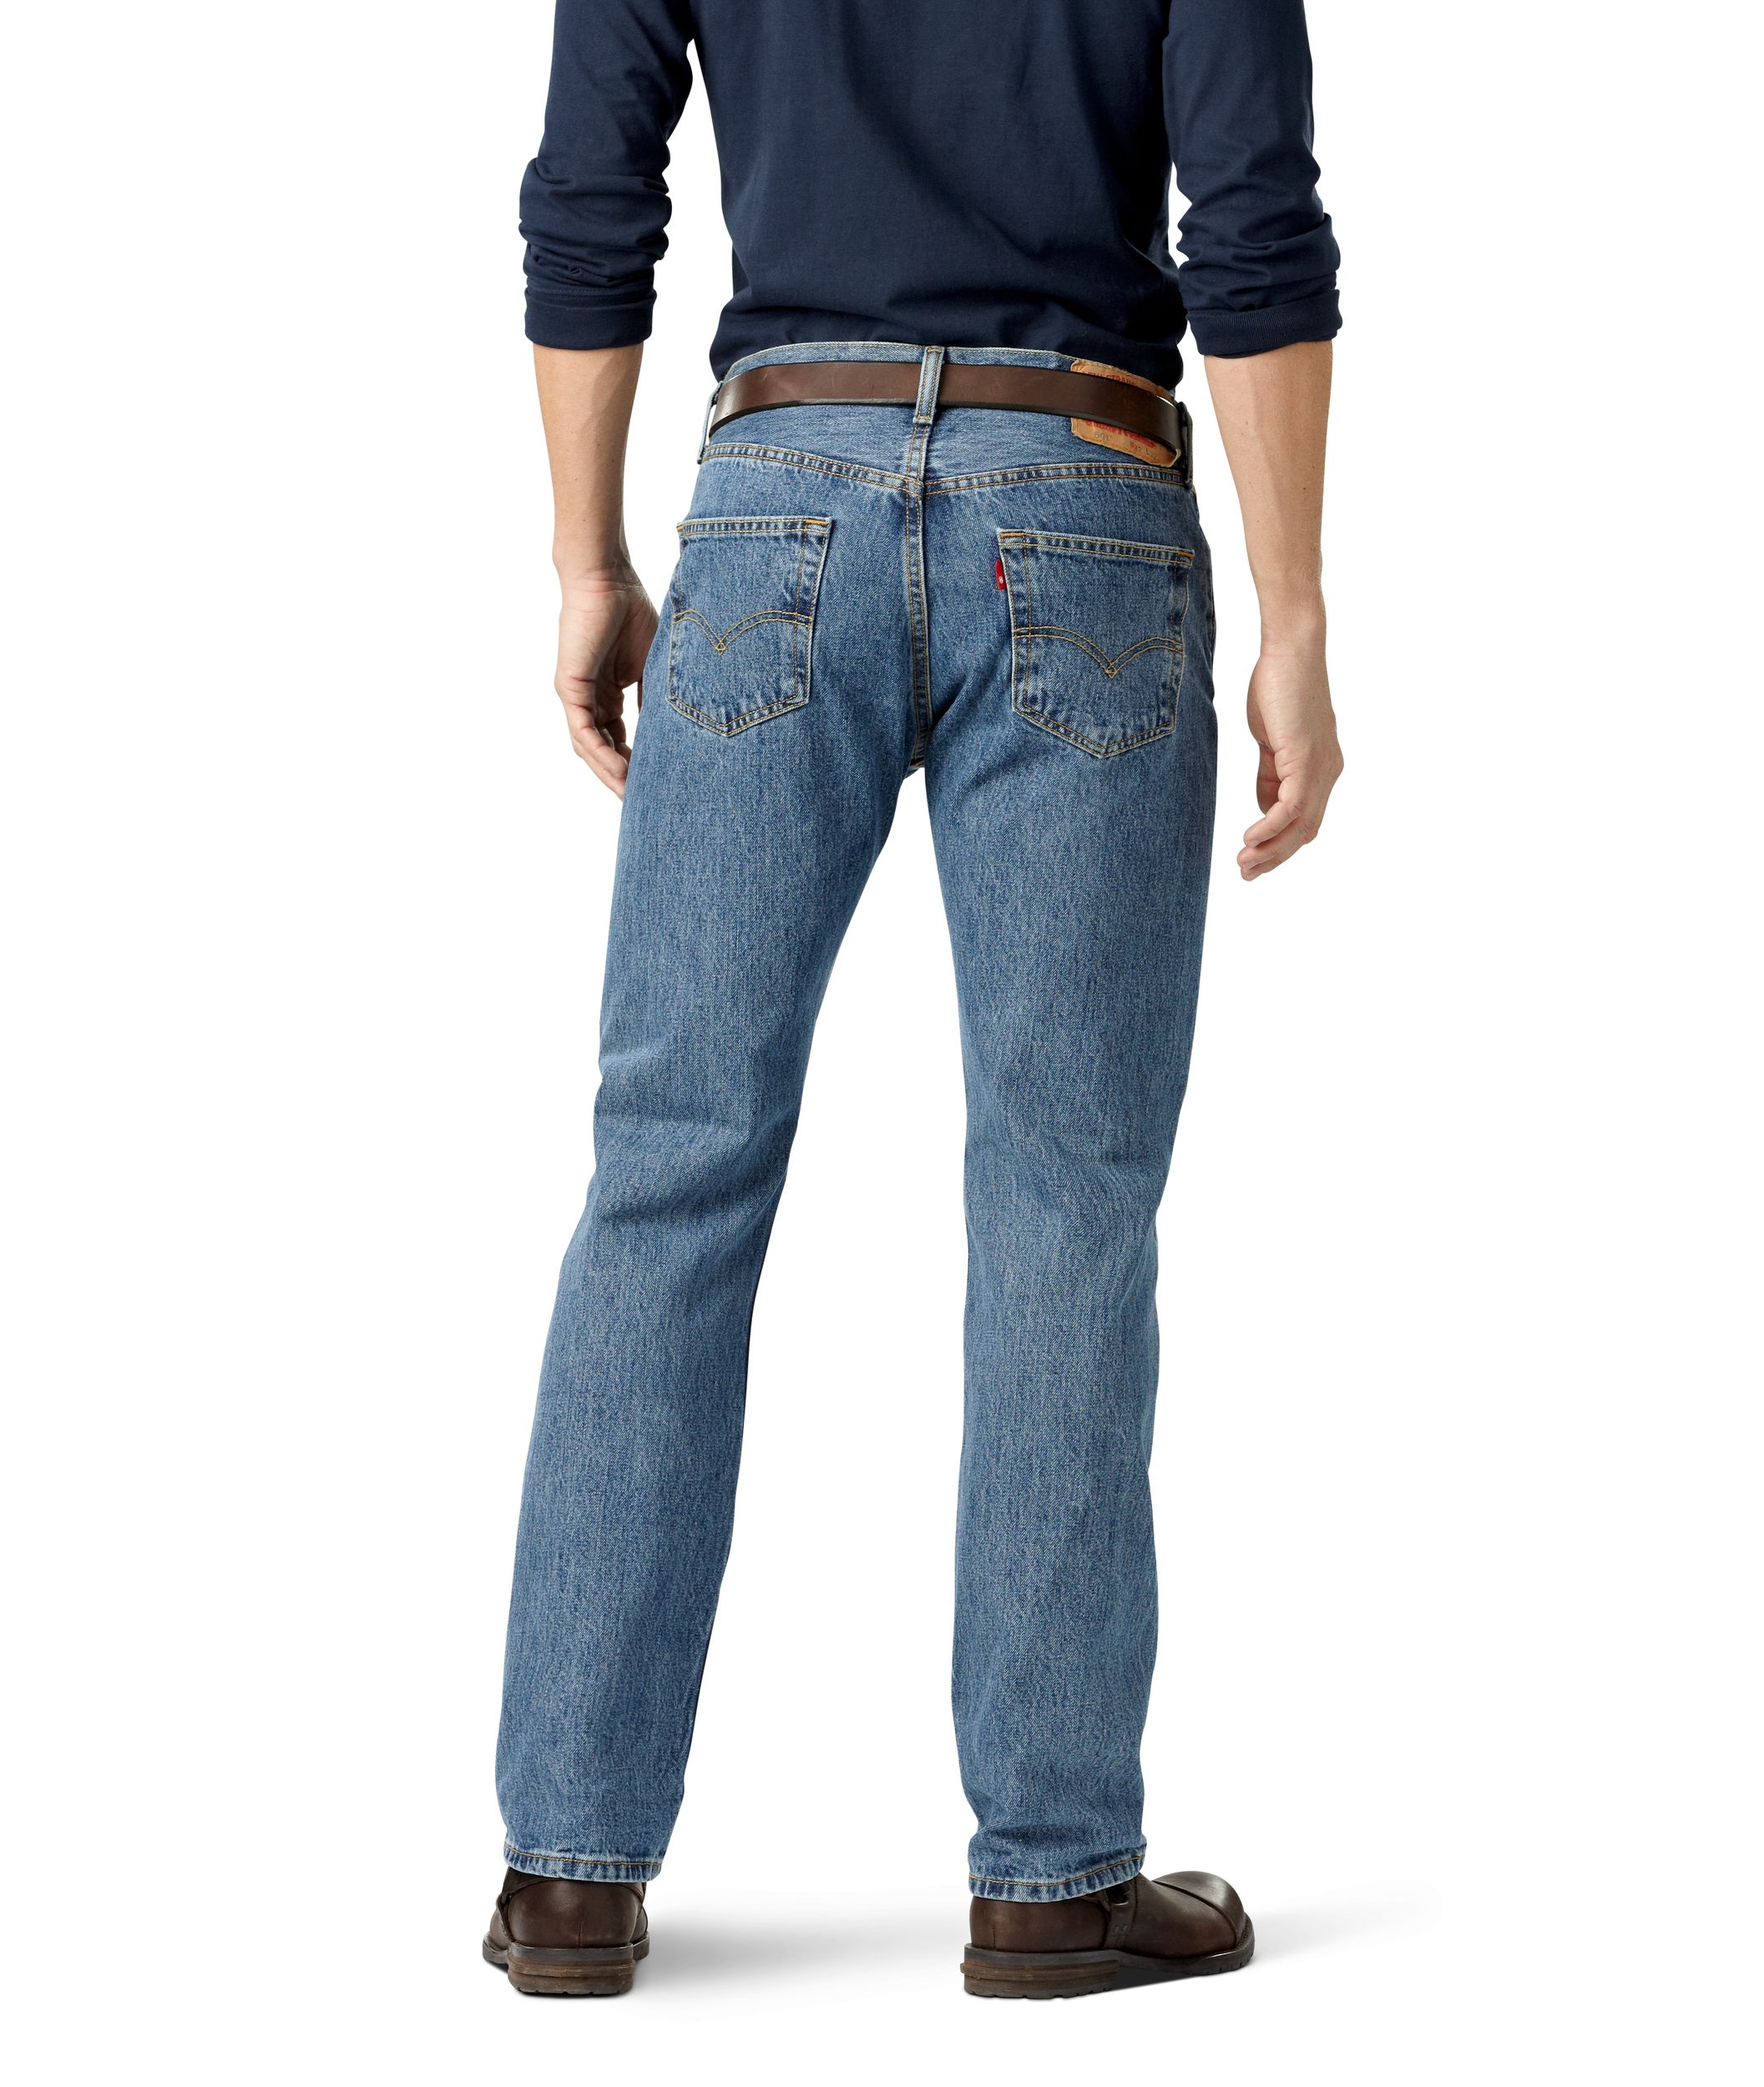 Levi's Men's 501 Original Fit Stone Washed Jeans - Denim